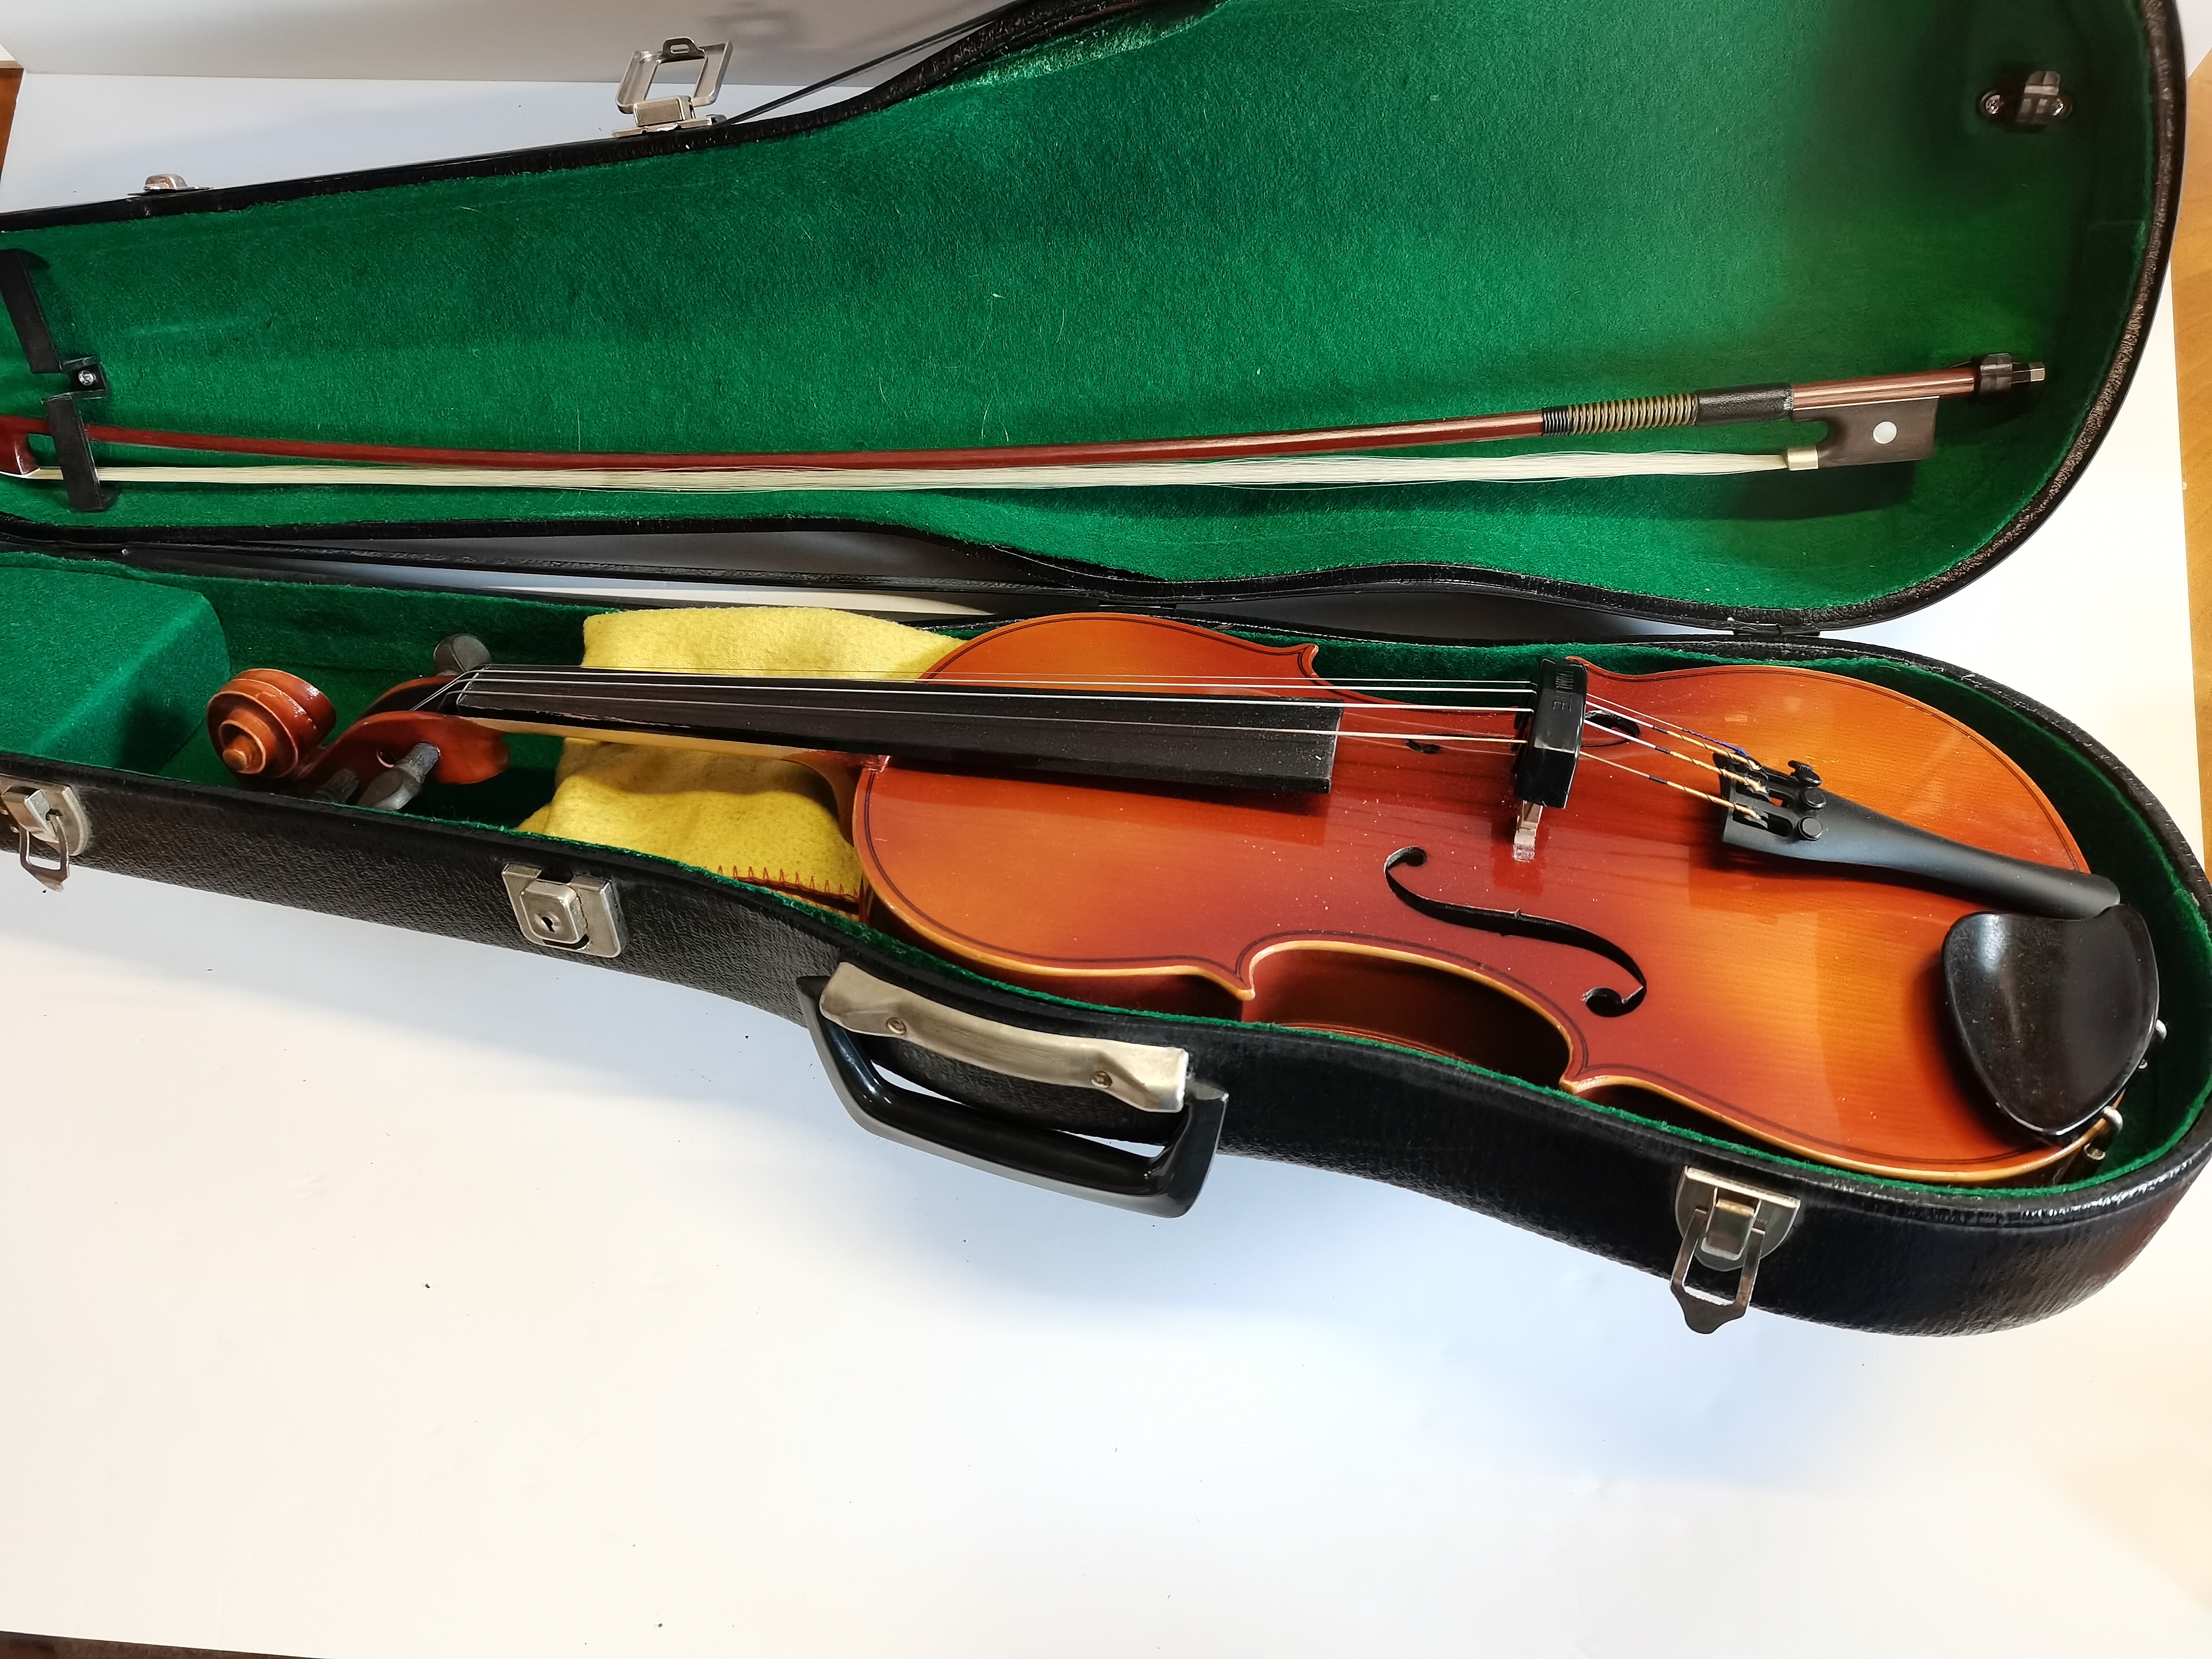 Kiso Susuki violin Co Violin Exc. Condition With Case - Image 3 of 3